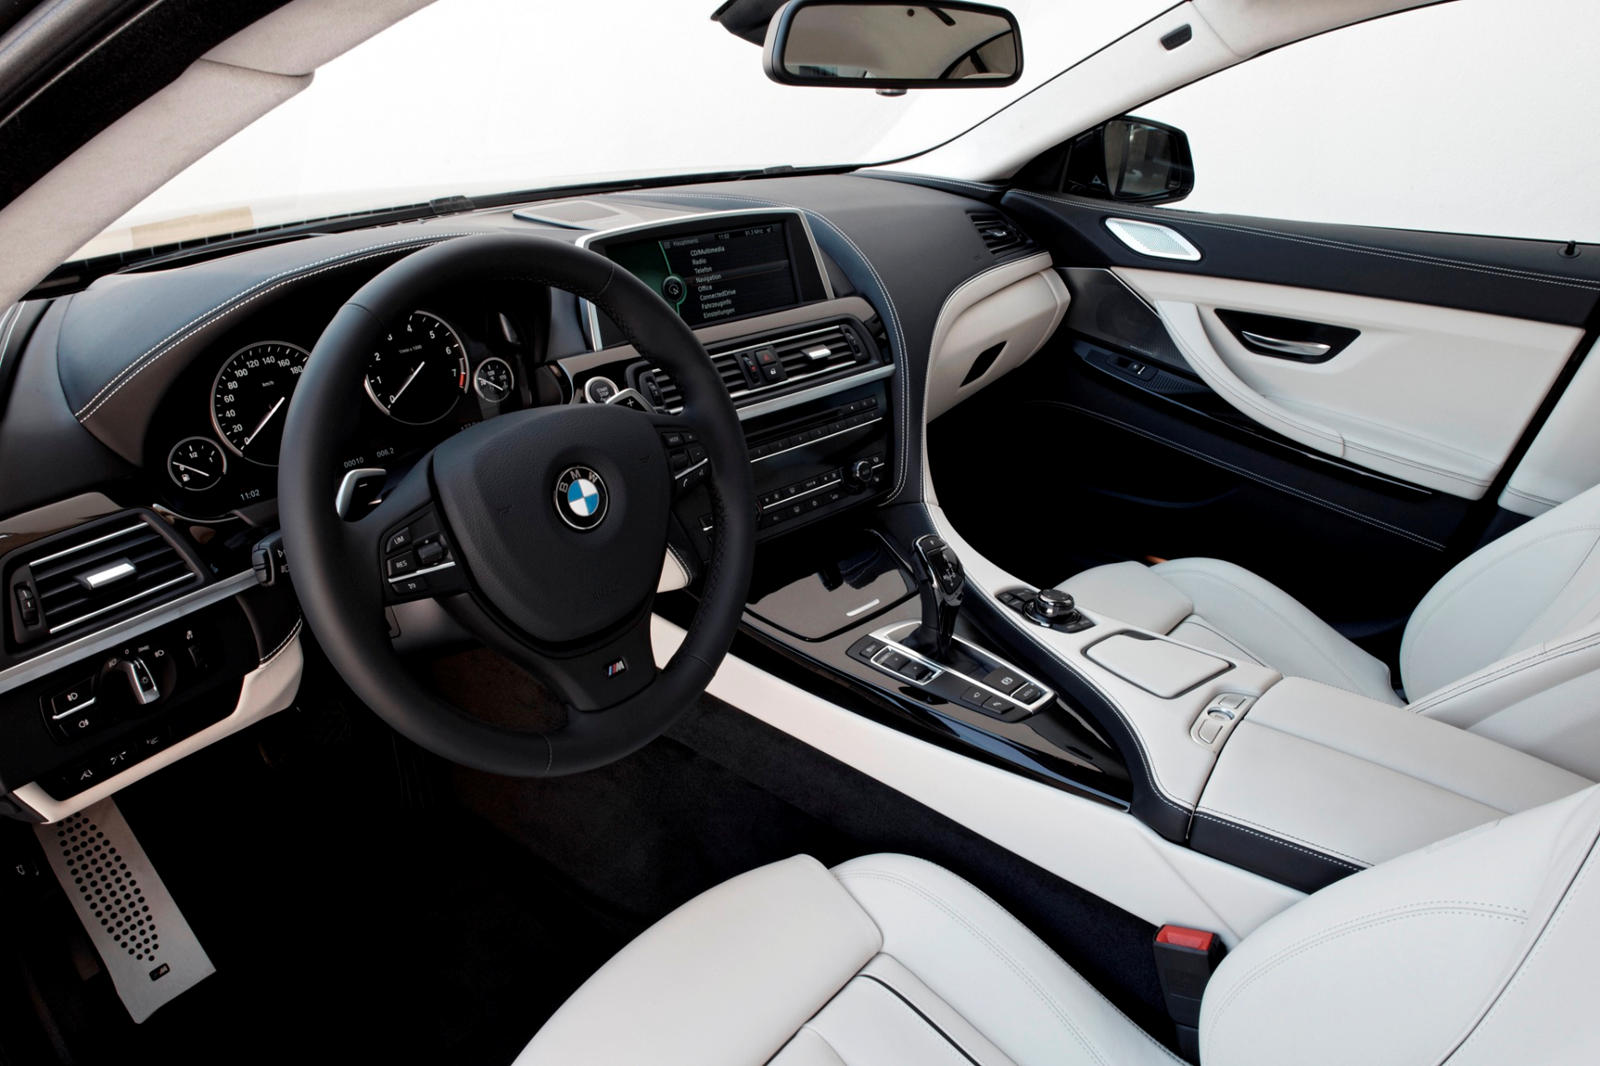 2014 BMW 6 Series Gran Coupe Interior Photos | CarBuzz